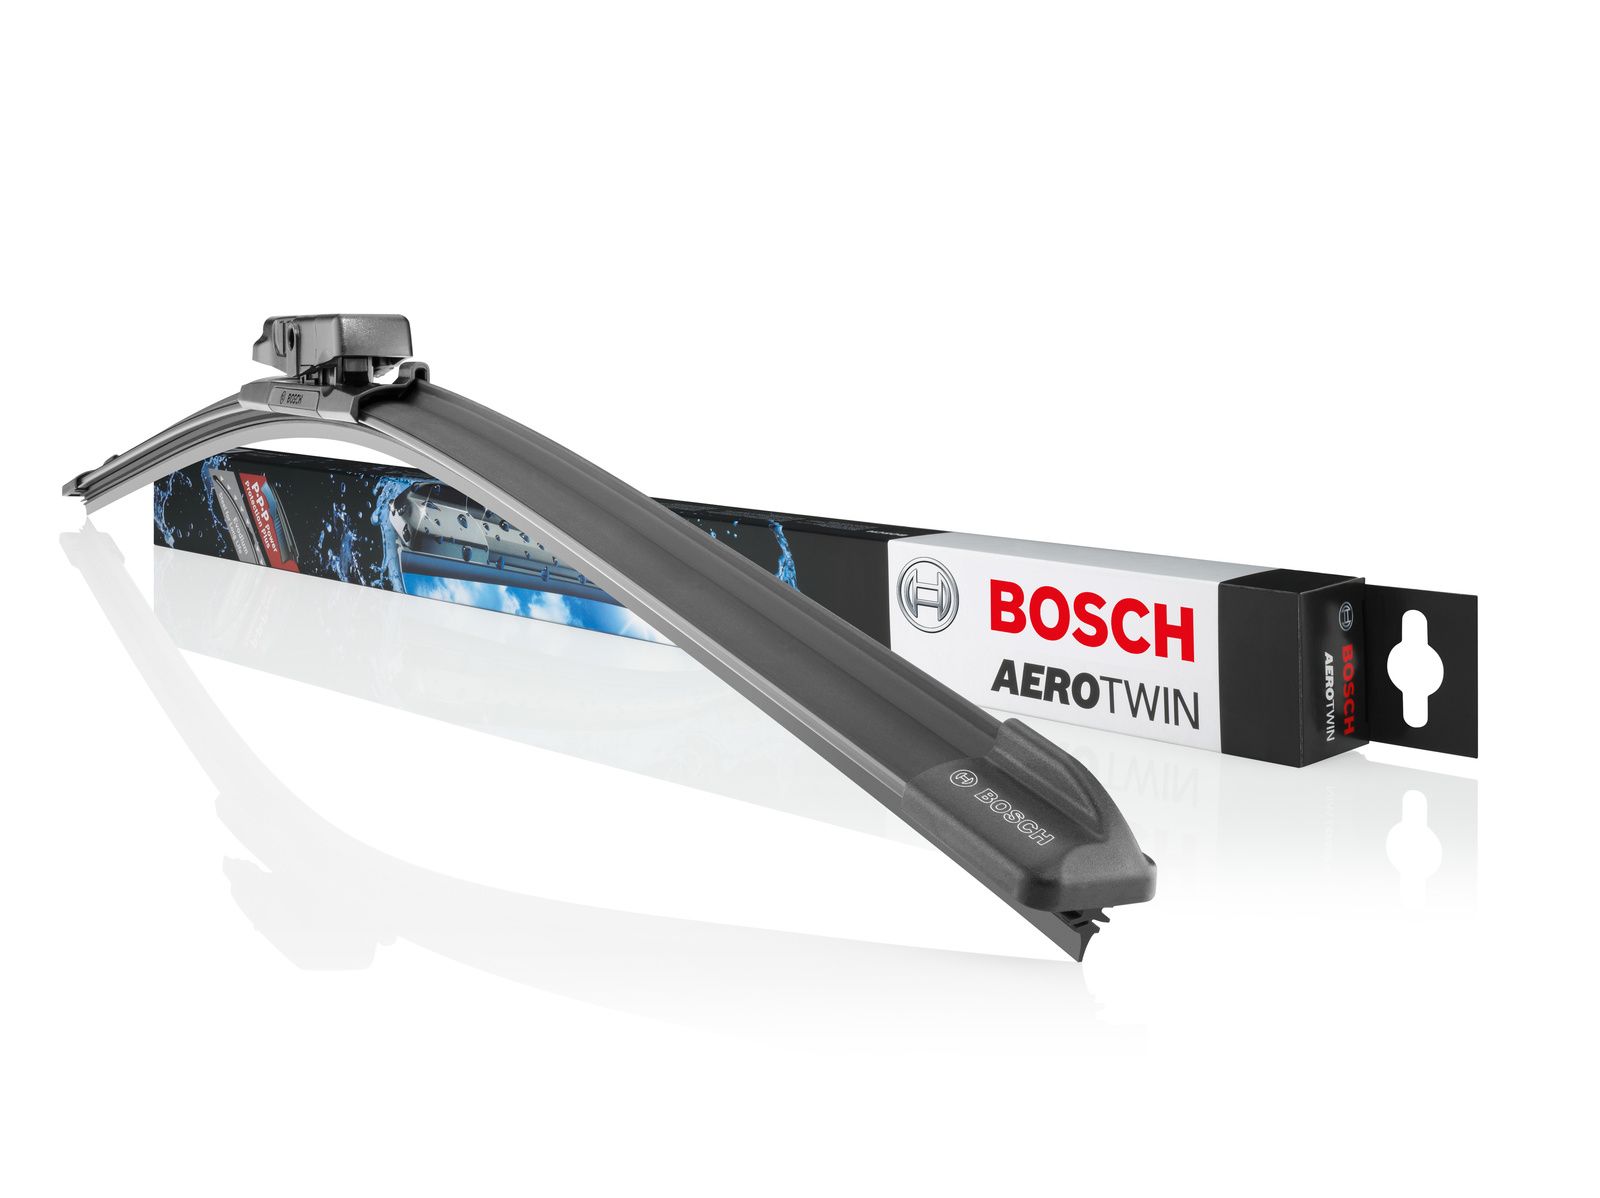 Escobilla limpiaparabrisas Bosch Aerotwin